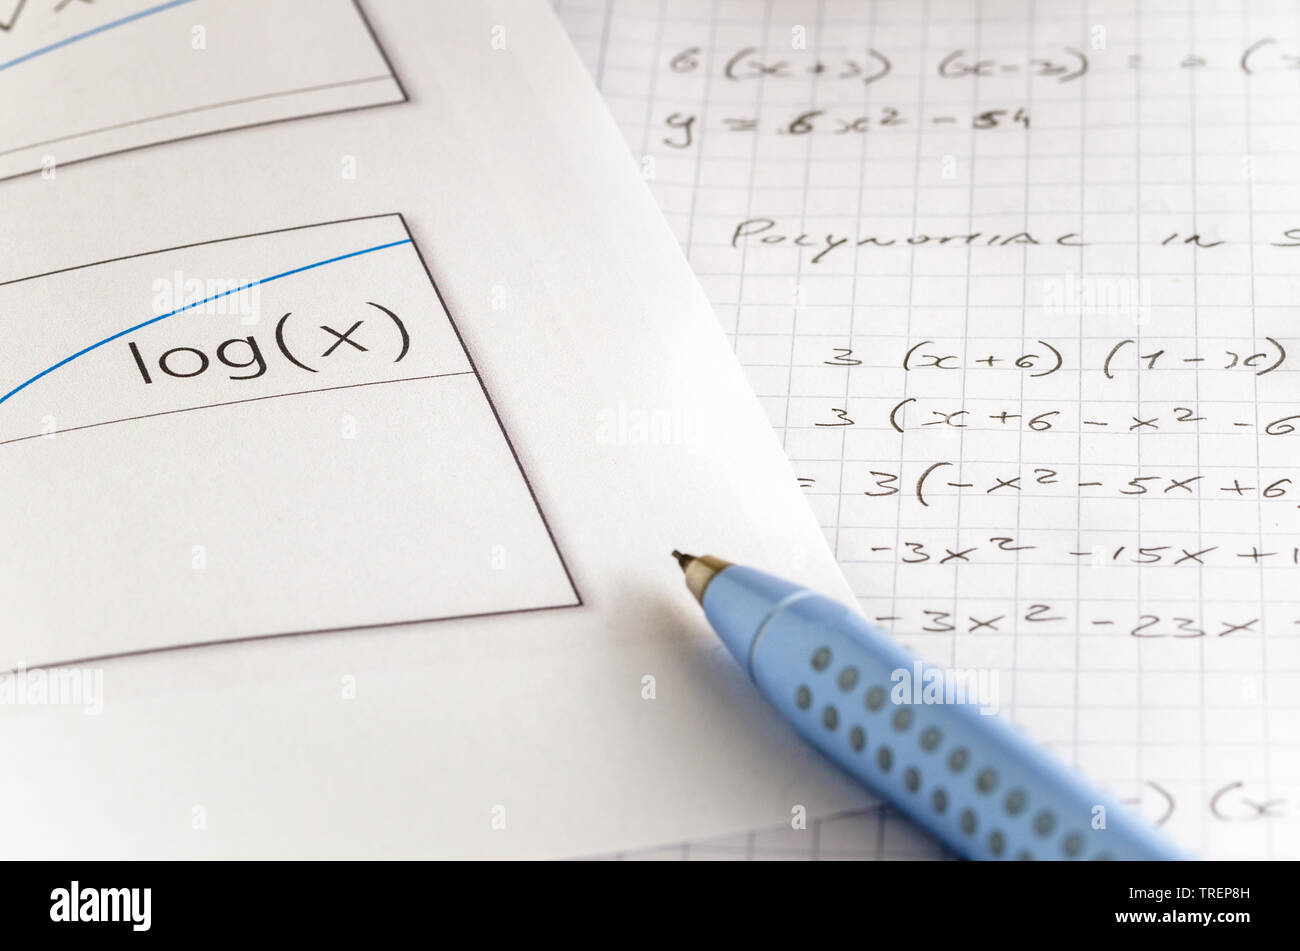 Chiudere la vista di un foglio di carta con un grafico logaritmico e un notebook aperto con manoscritta di equazioni matematiche Foto Stock